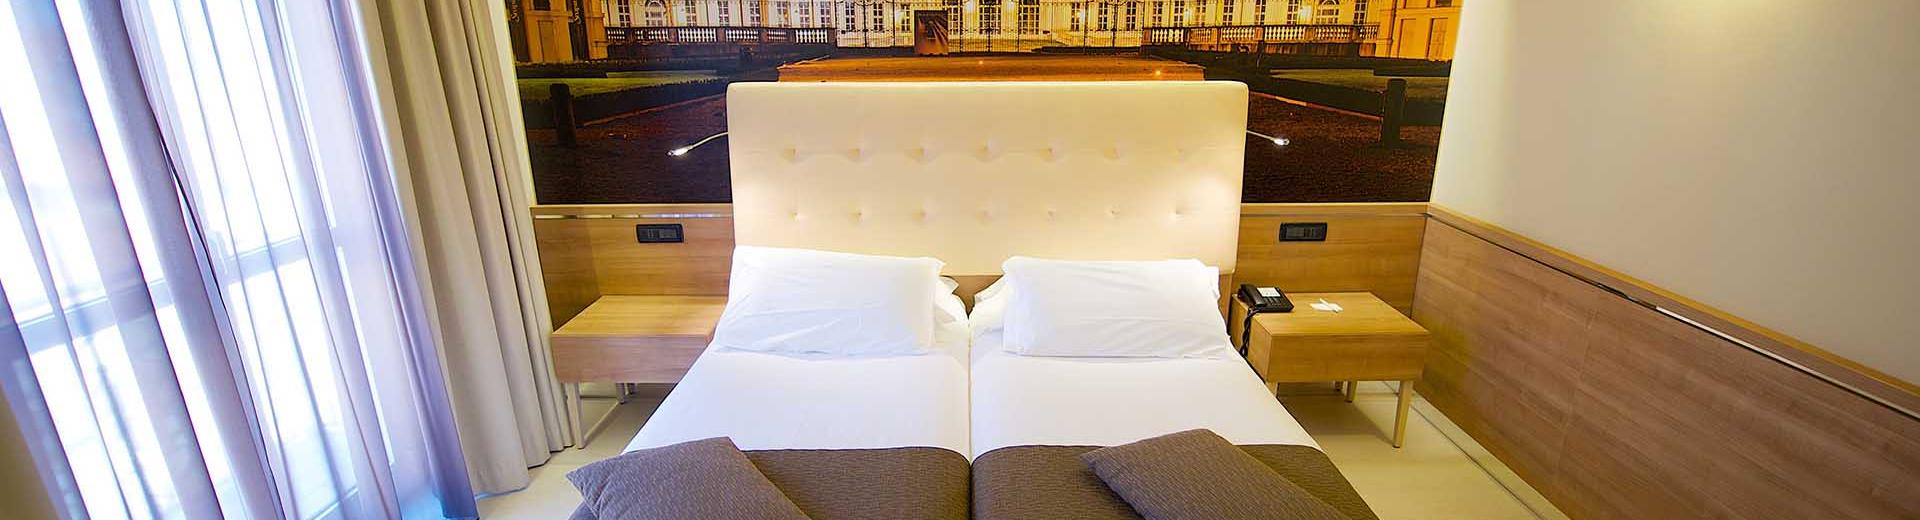 Die Junioren Suiten im Best Western Hotel Luxor. 4 Sterne Hotel in Turin